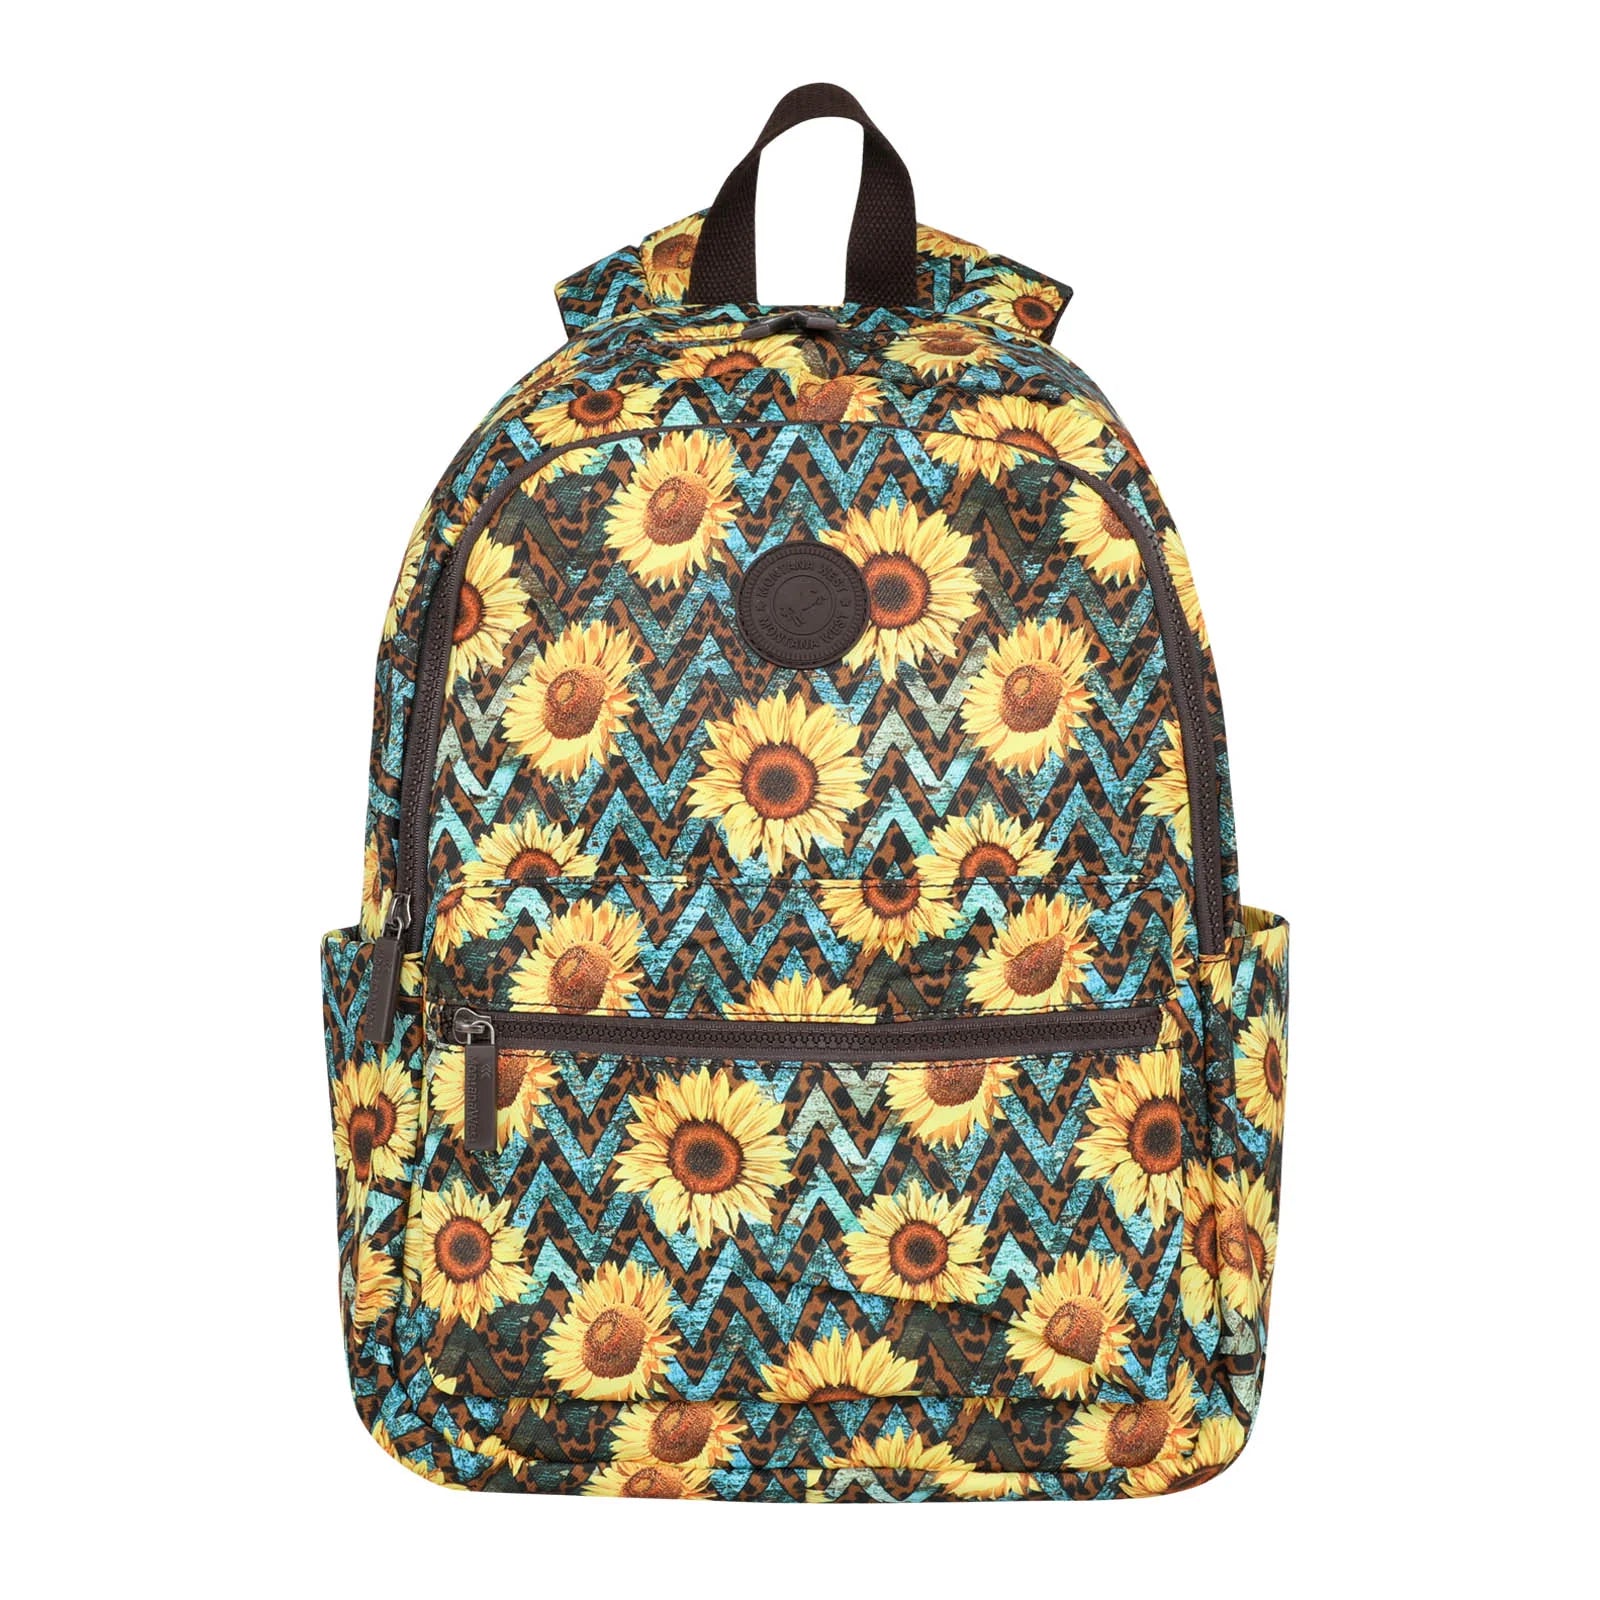 Sunflower Print Backpack